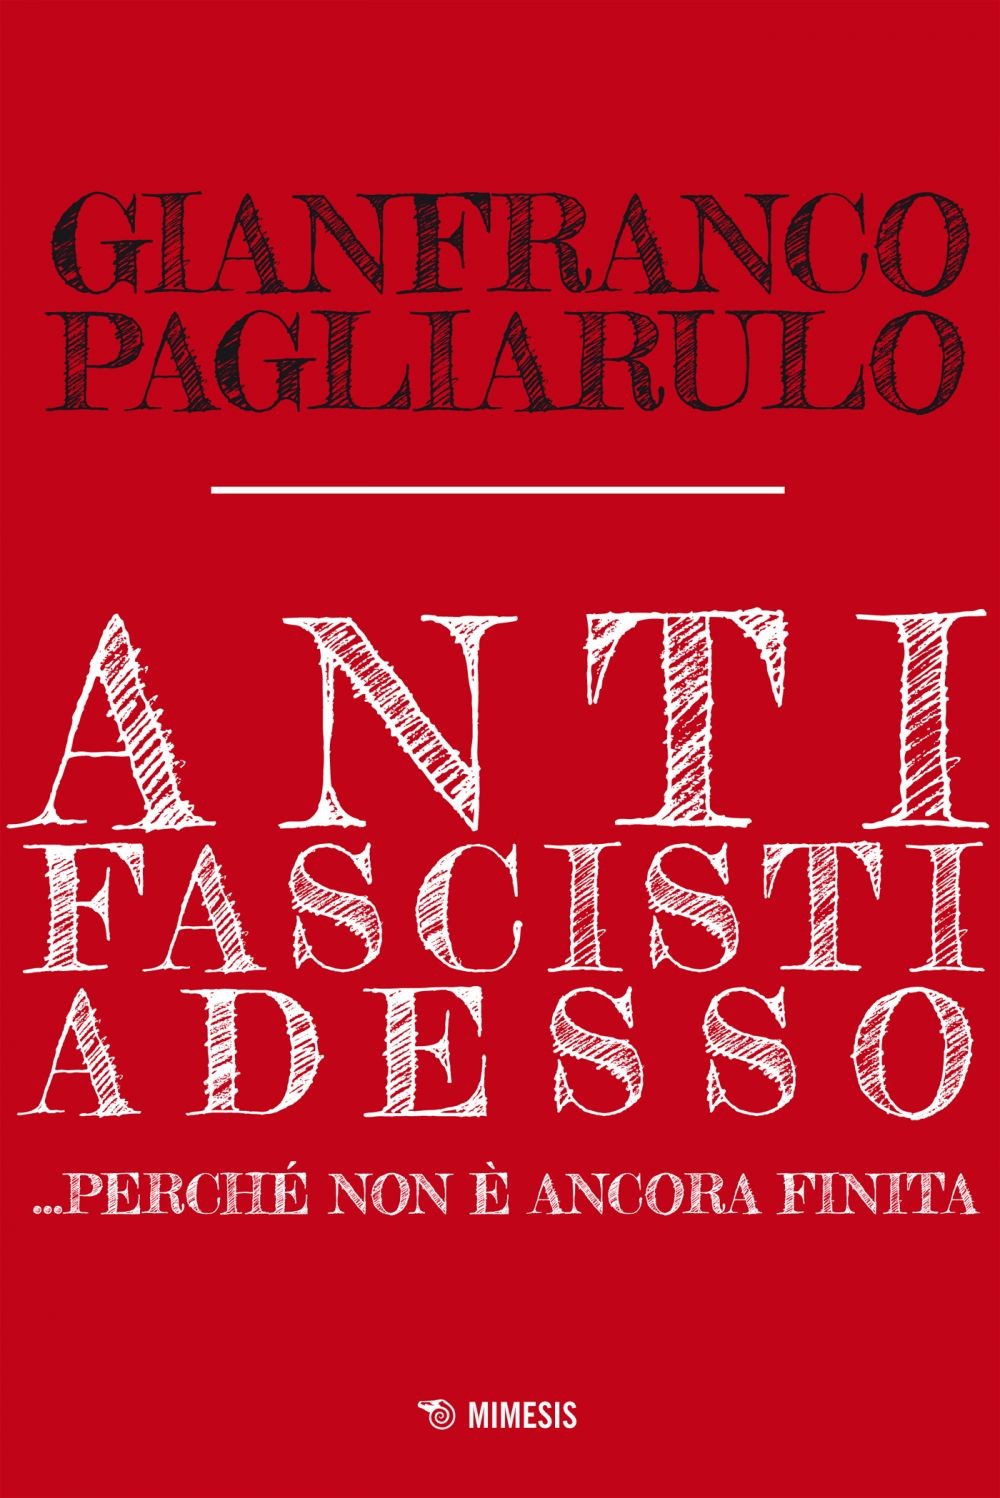 Antifascisti adesso - Librerie.coop